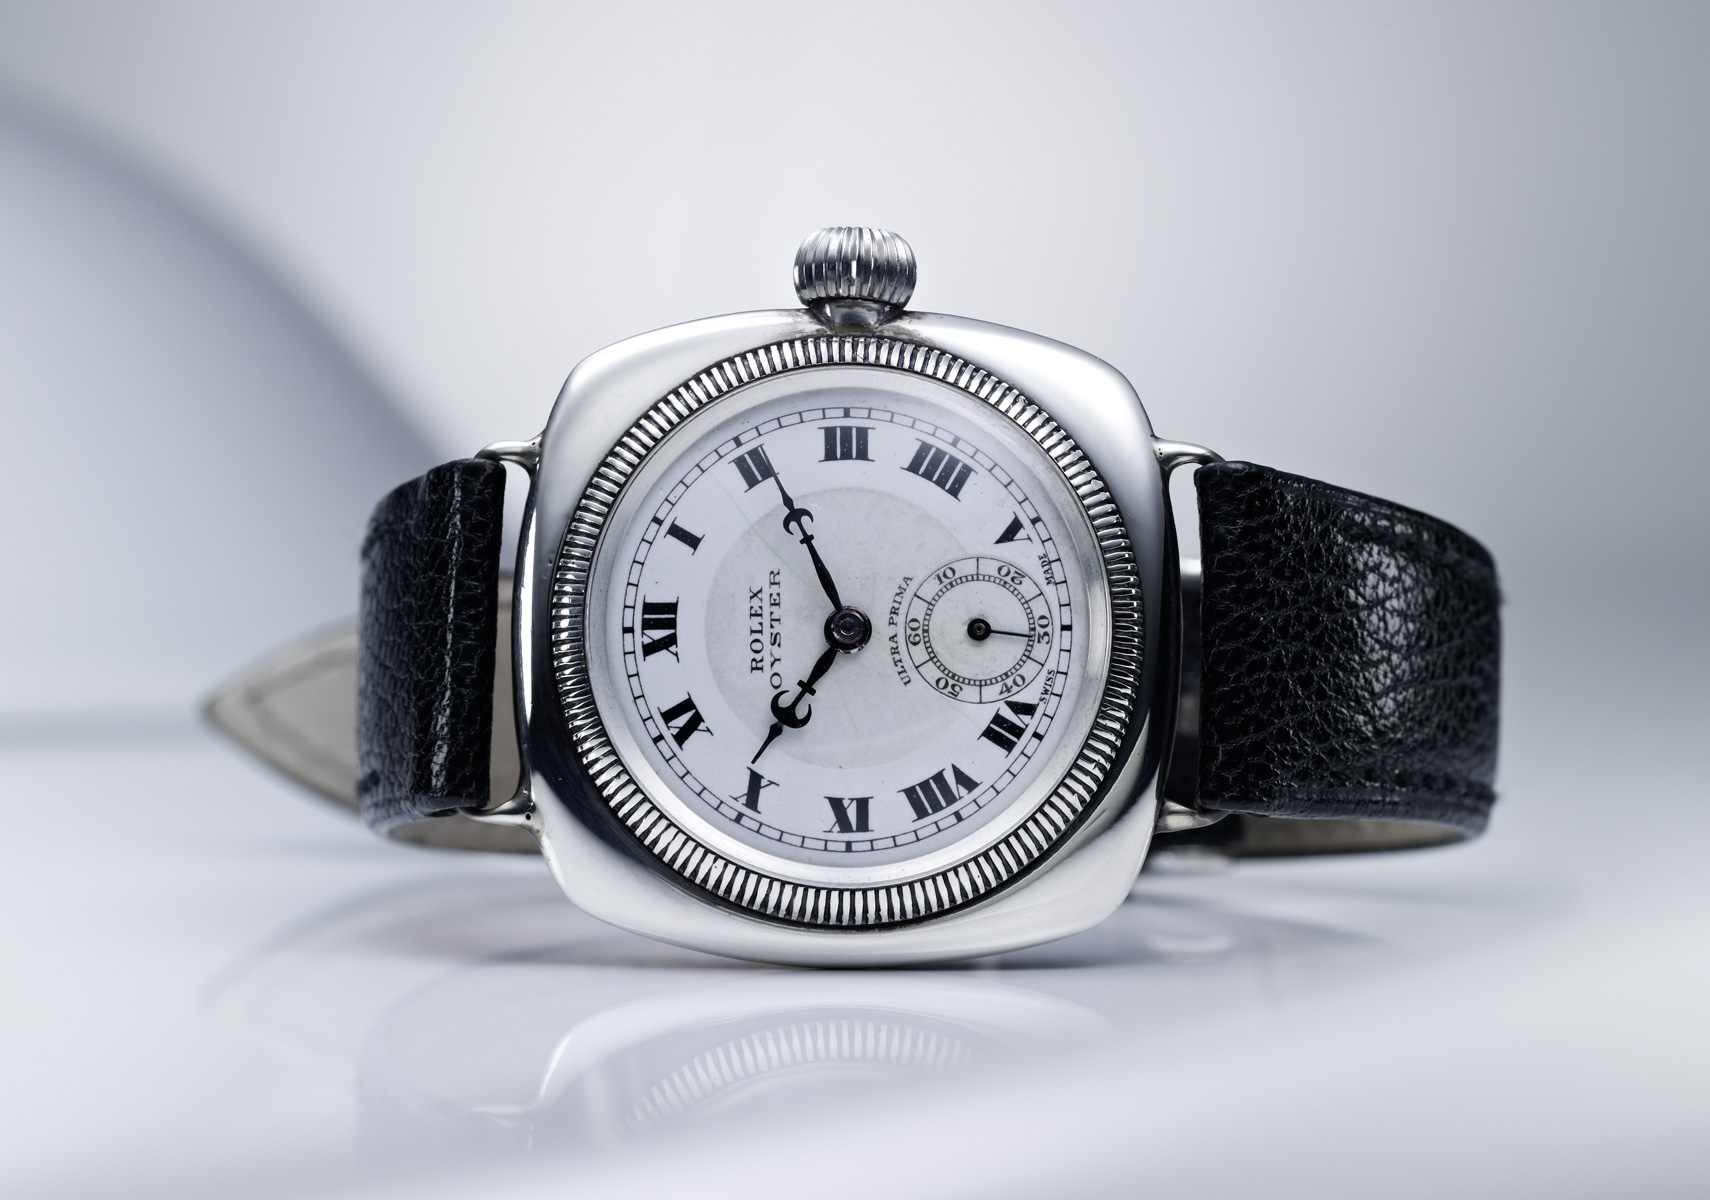 Original Rolex Oyster Perpetual Watch